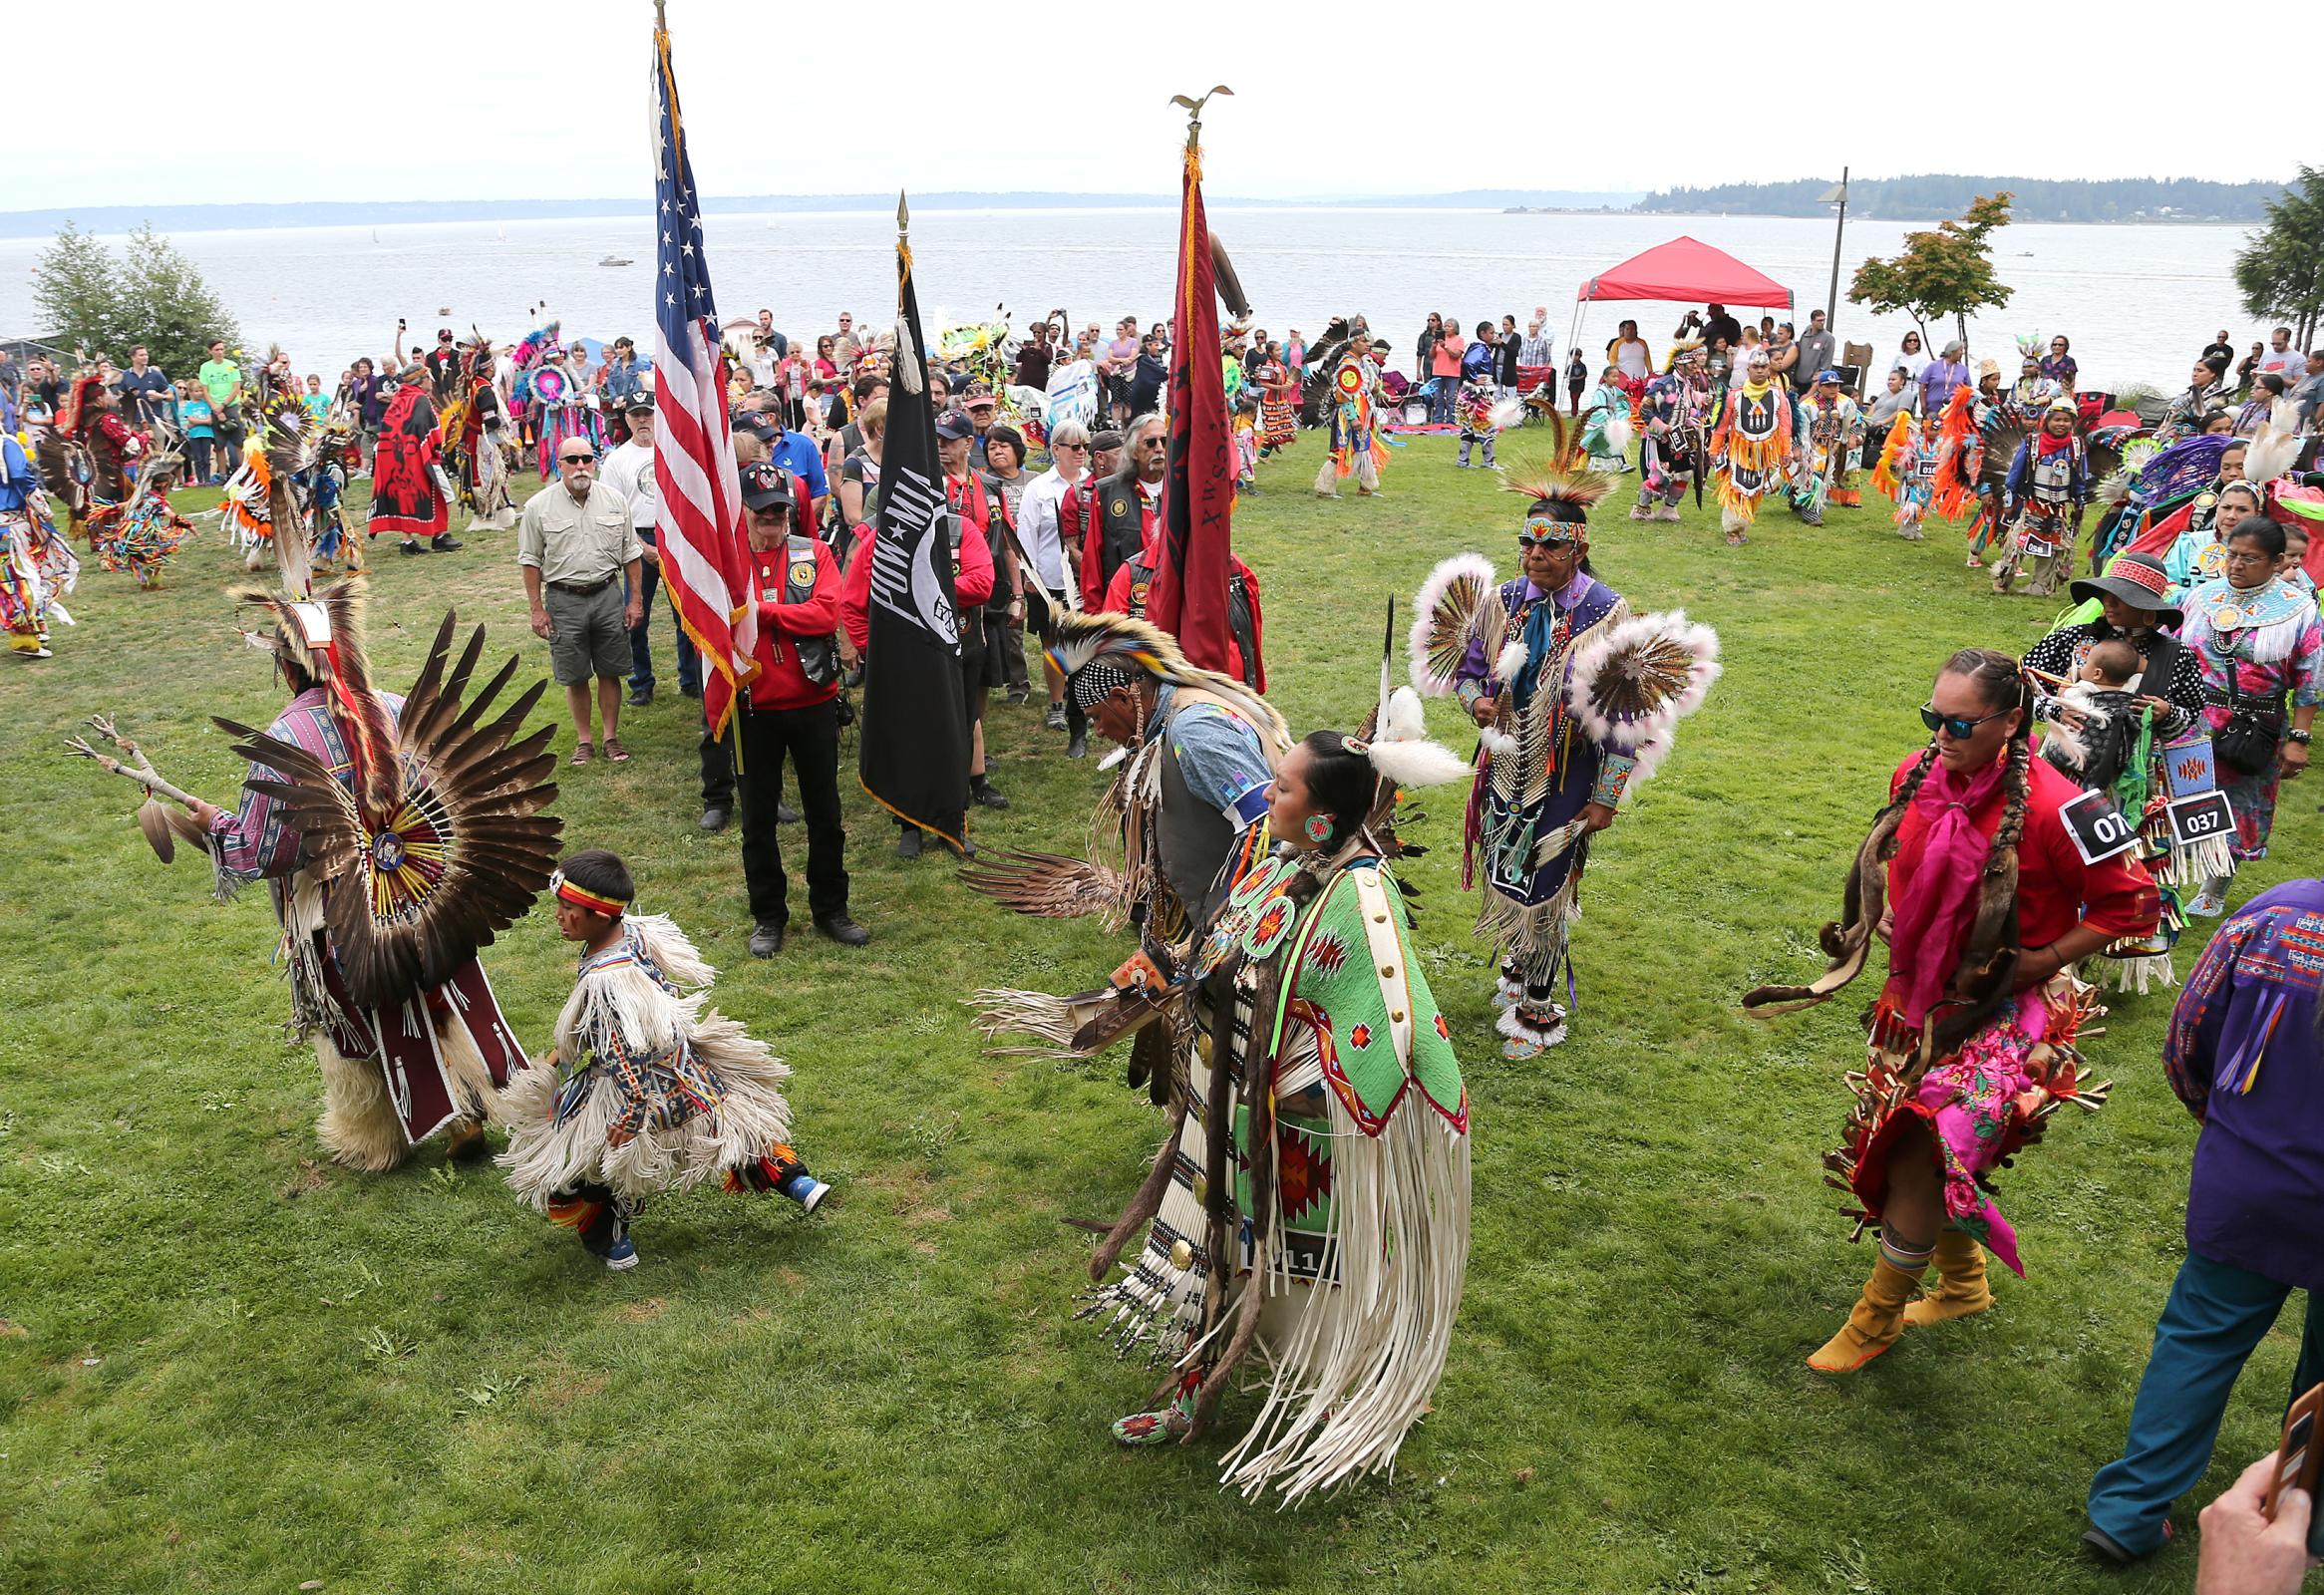 Native American Dancers in Regalia